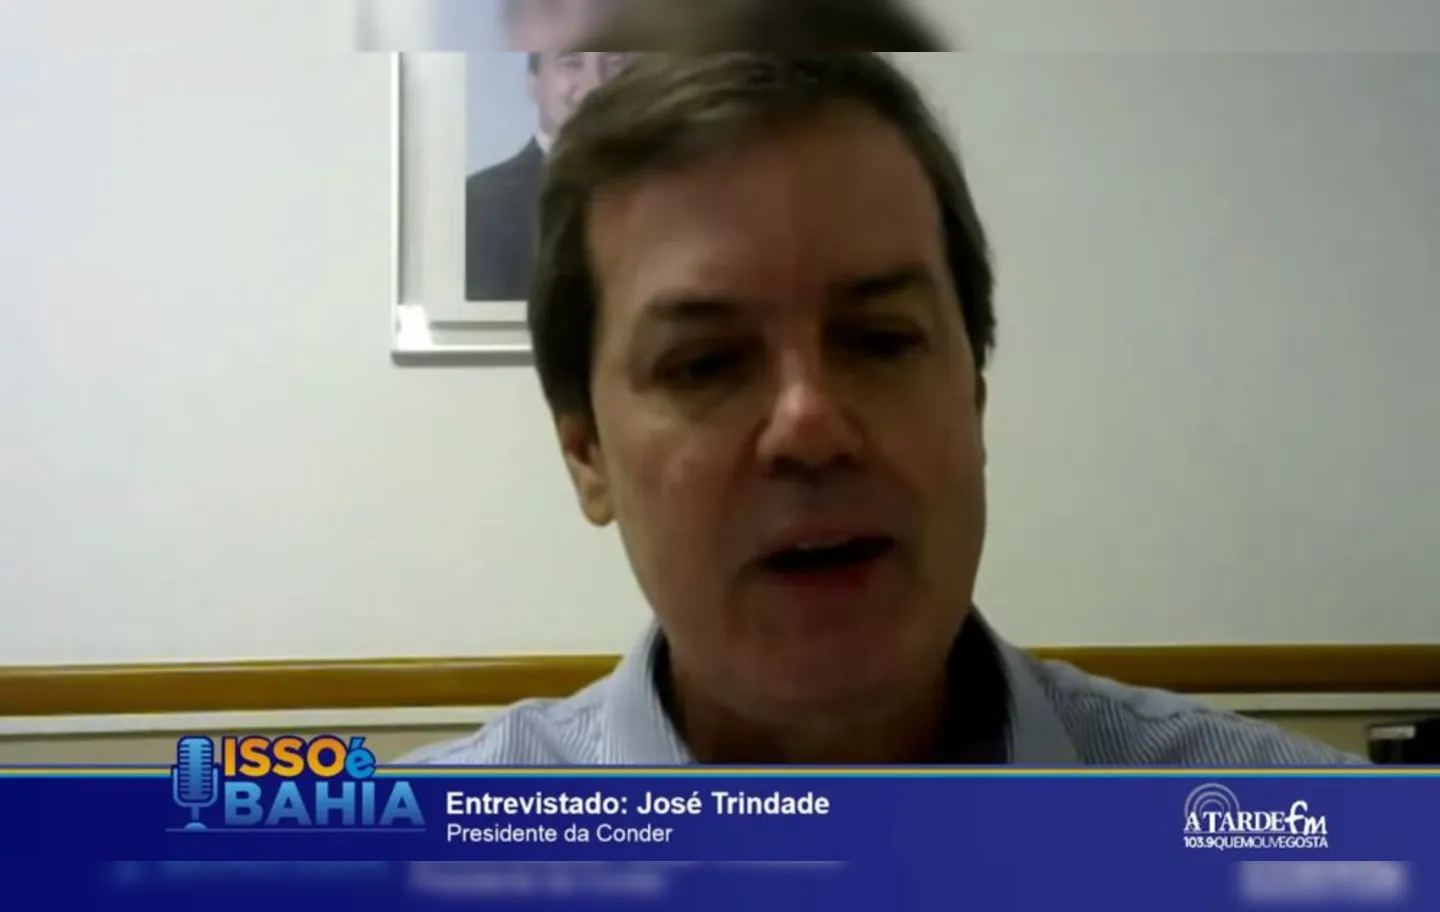 Na entrevista ao Isso É Bahia, José Trindade citou as obras da Conder em andamento